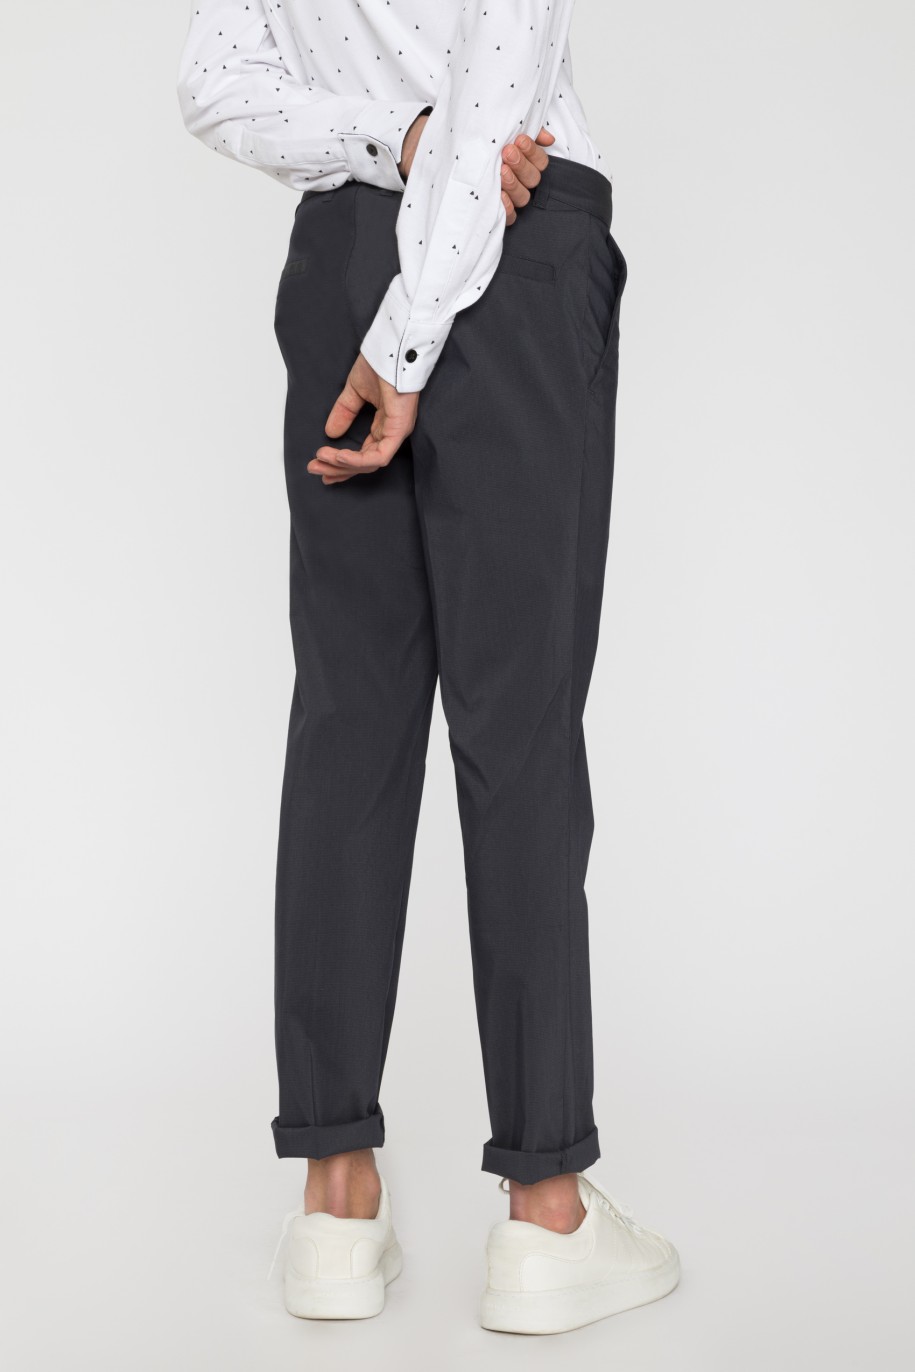 Granatowe spodnie garniturowe dla chłopaka - 33746